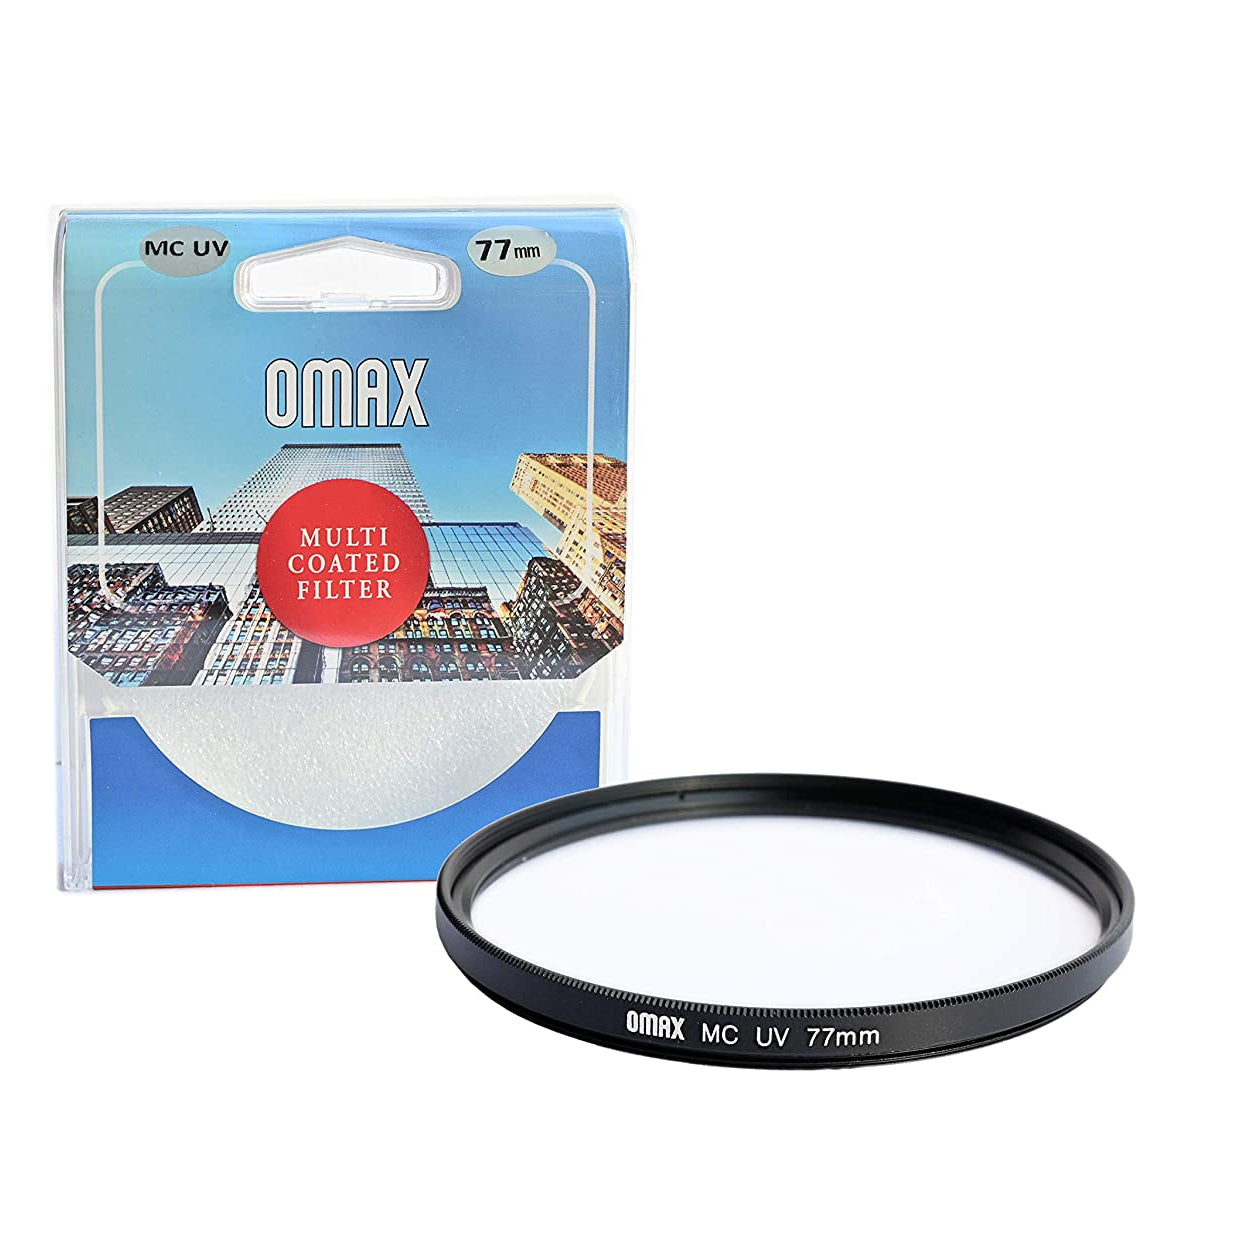 Omax 77mm MC UV filer for RF24-105mm f/4L IS USM Lens - The Camerashop